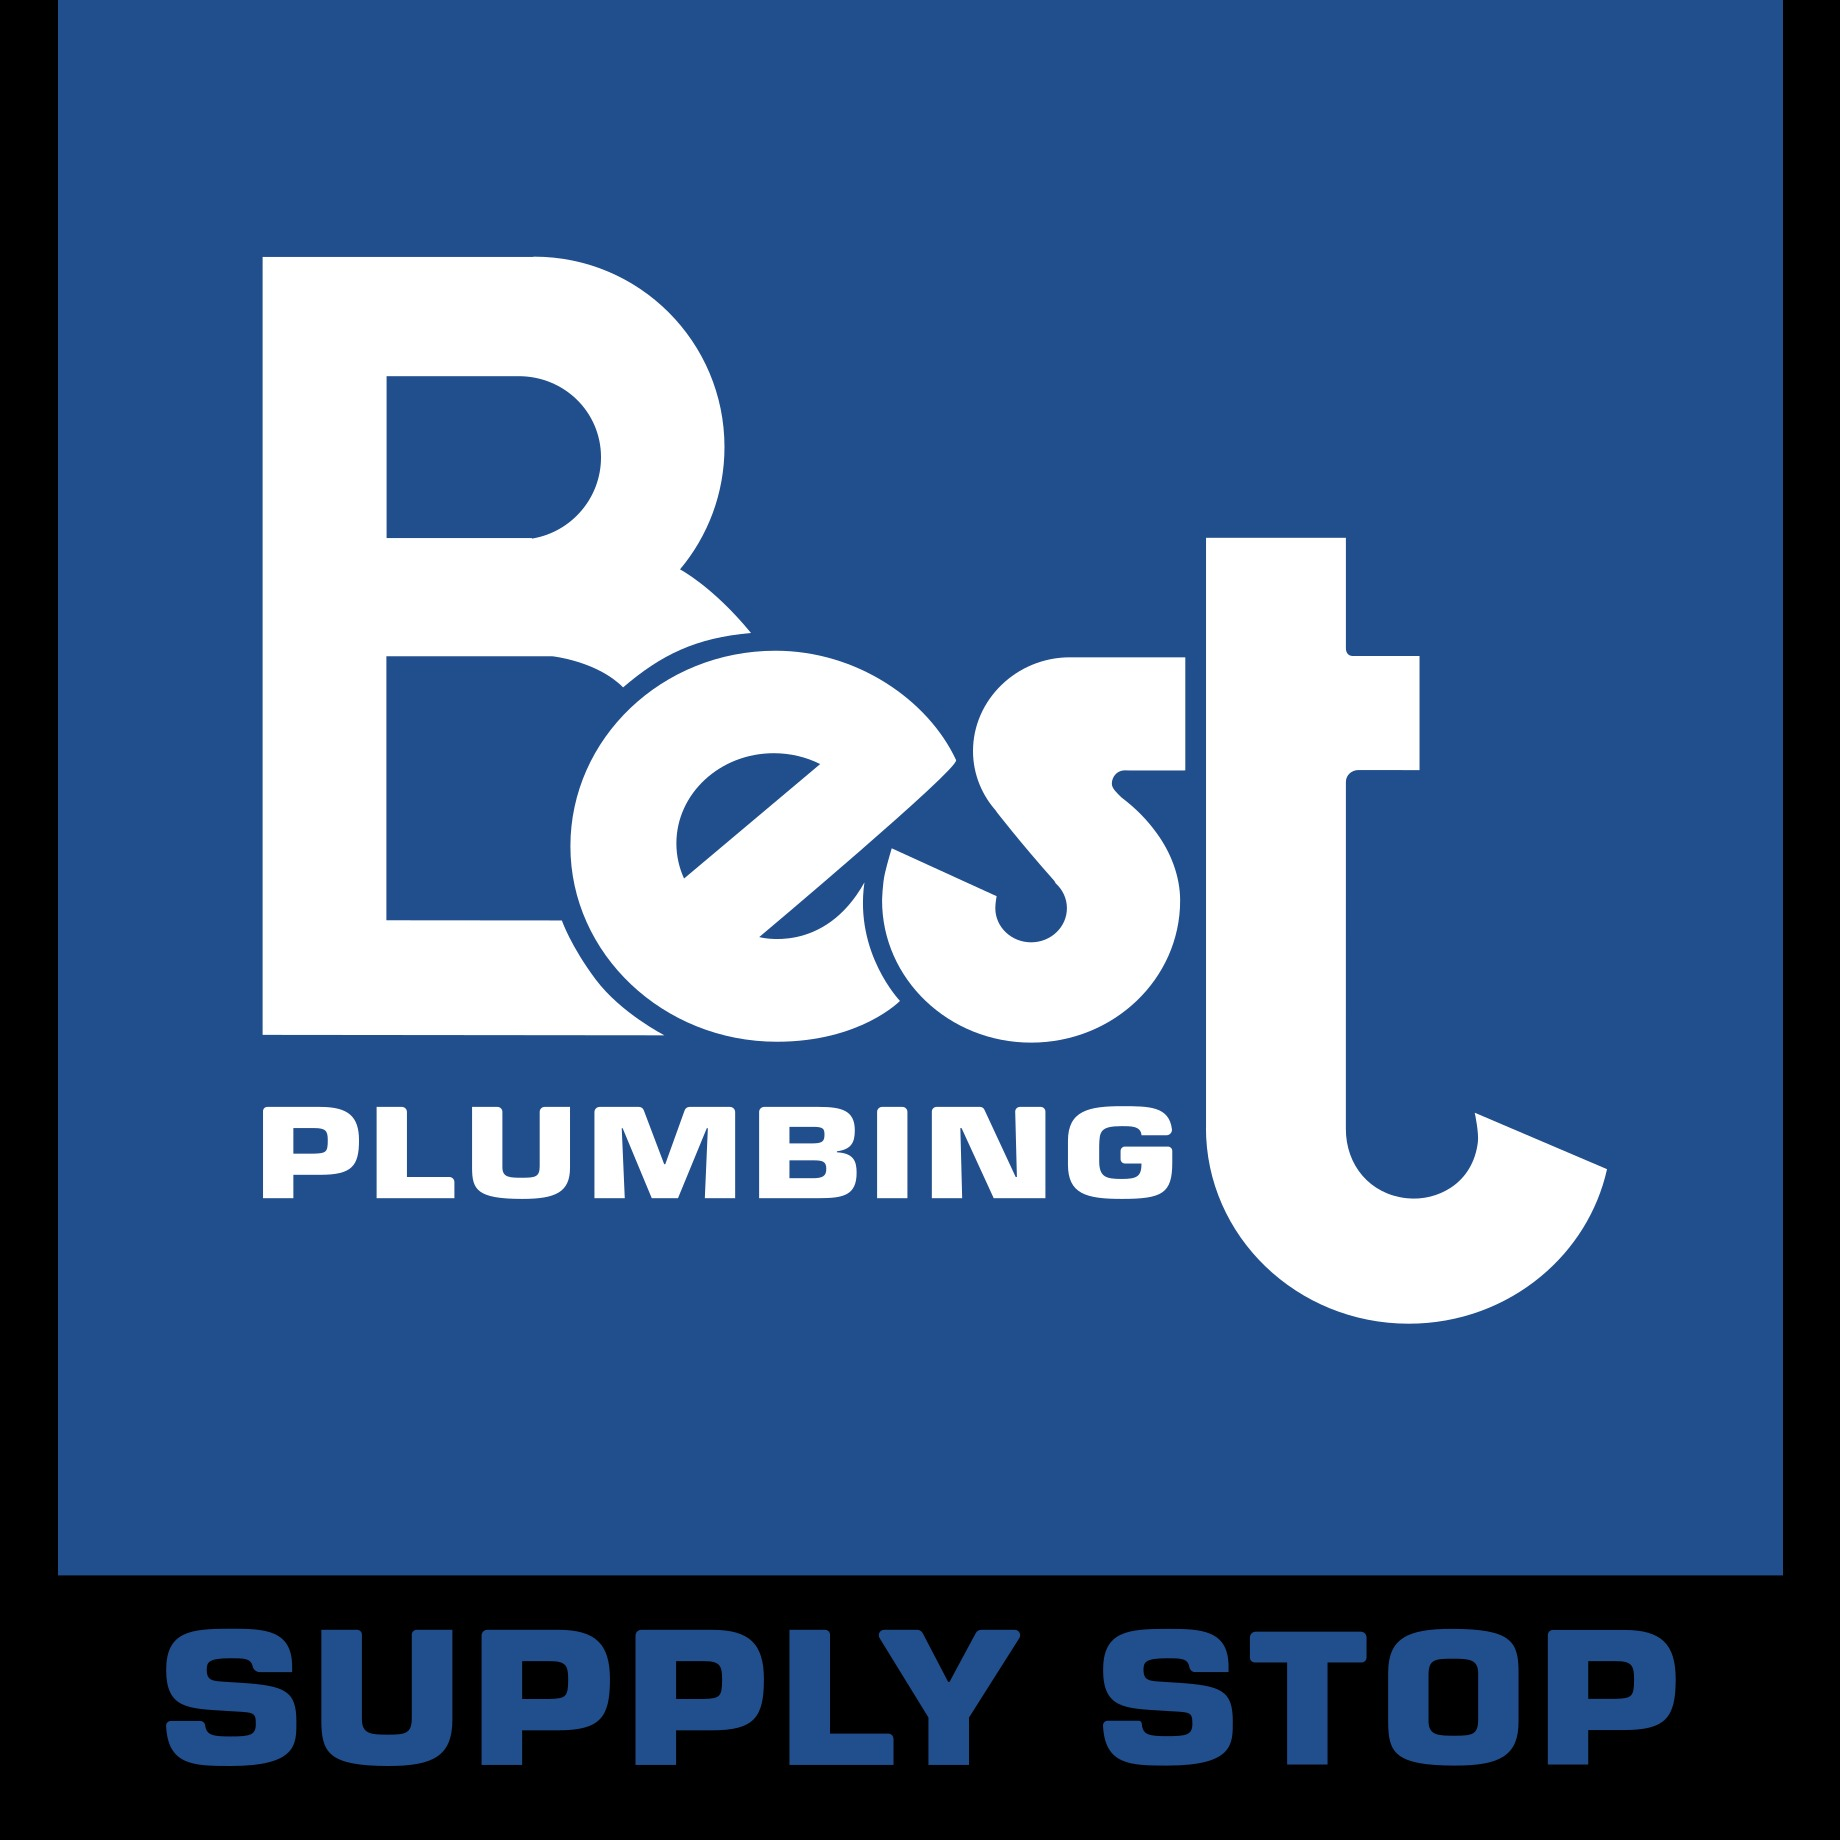 Best Plumbing Supply Stop